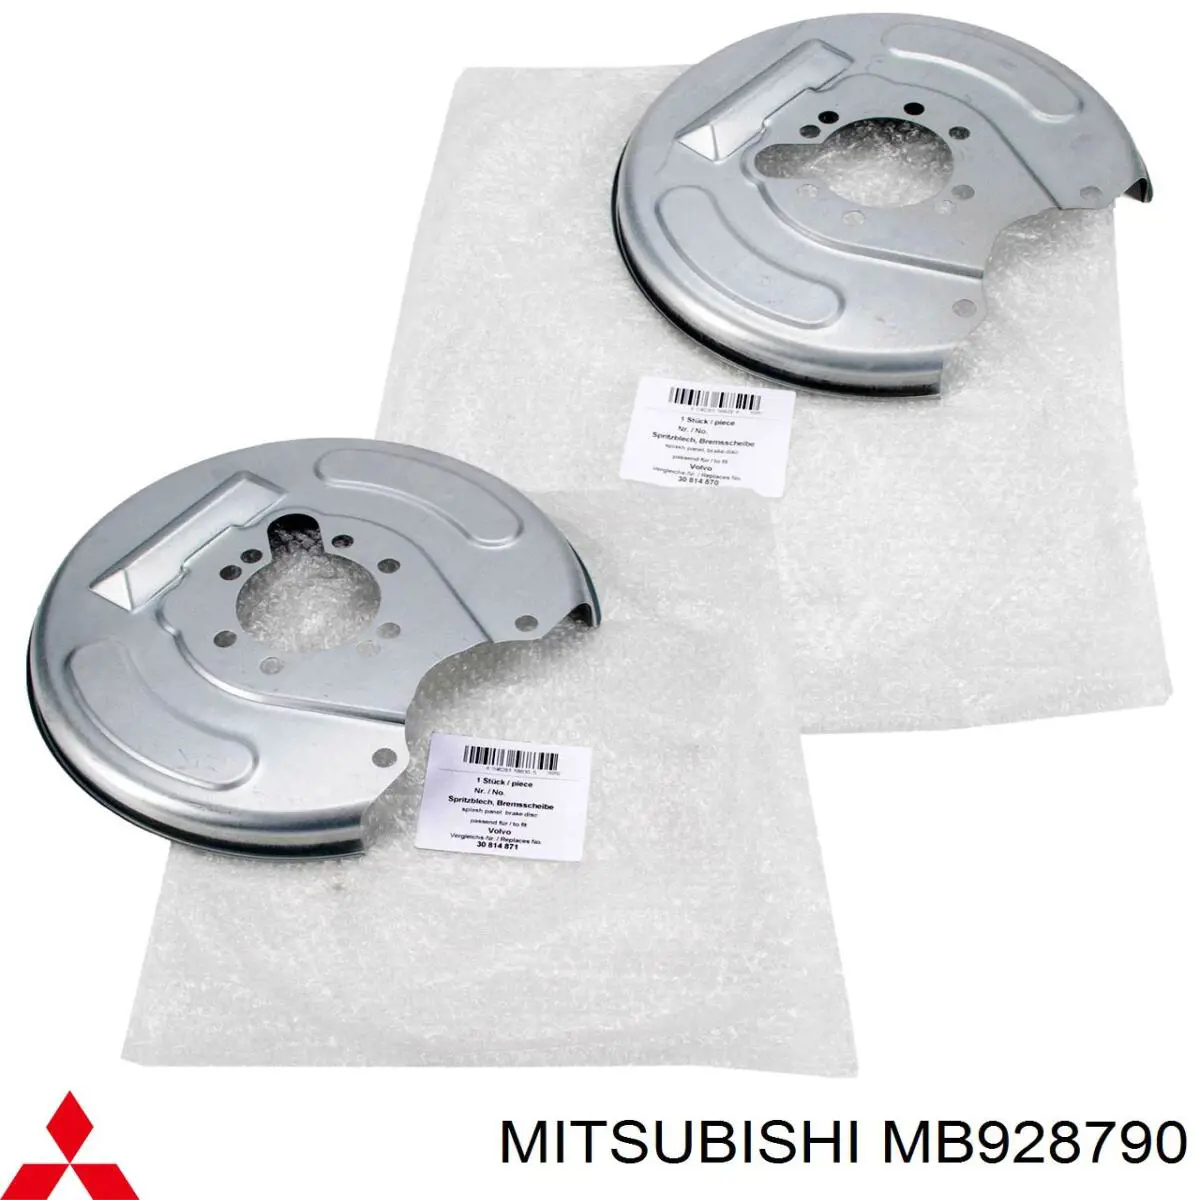 MB928790 Mitsubishi proteção esquerda do freio de disco traseiro